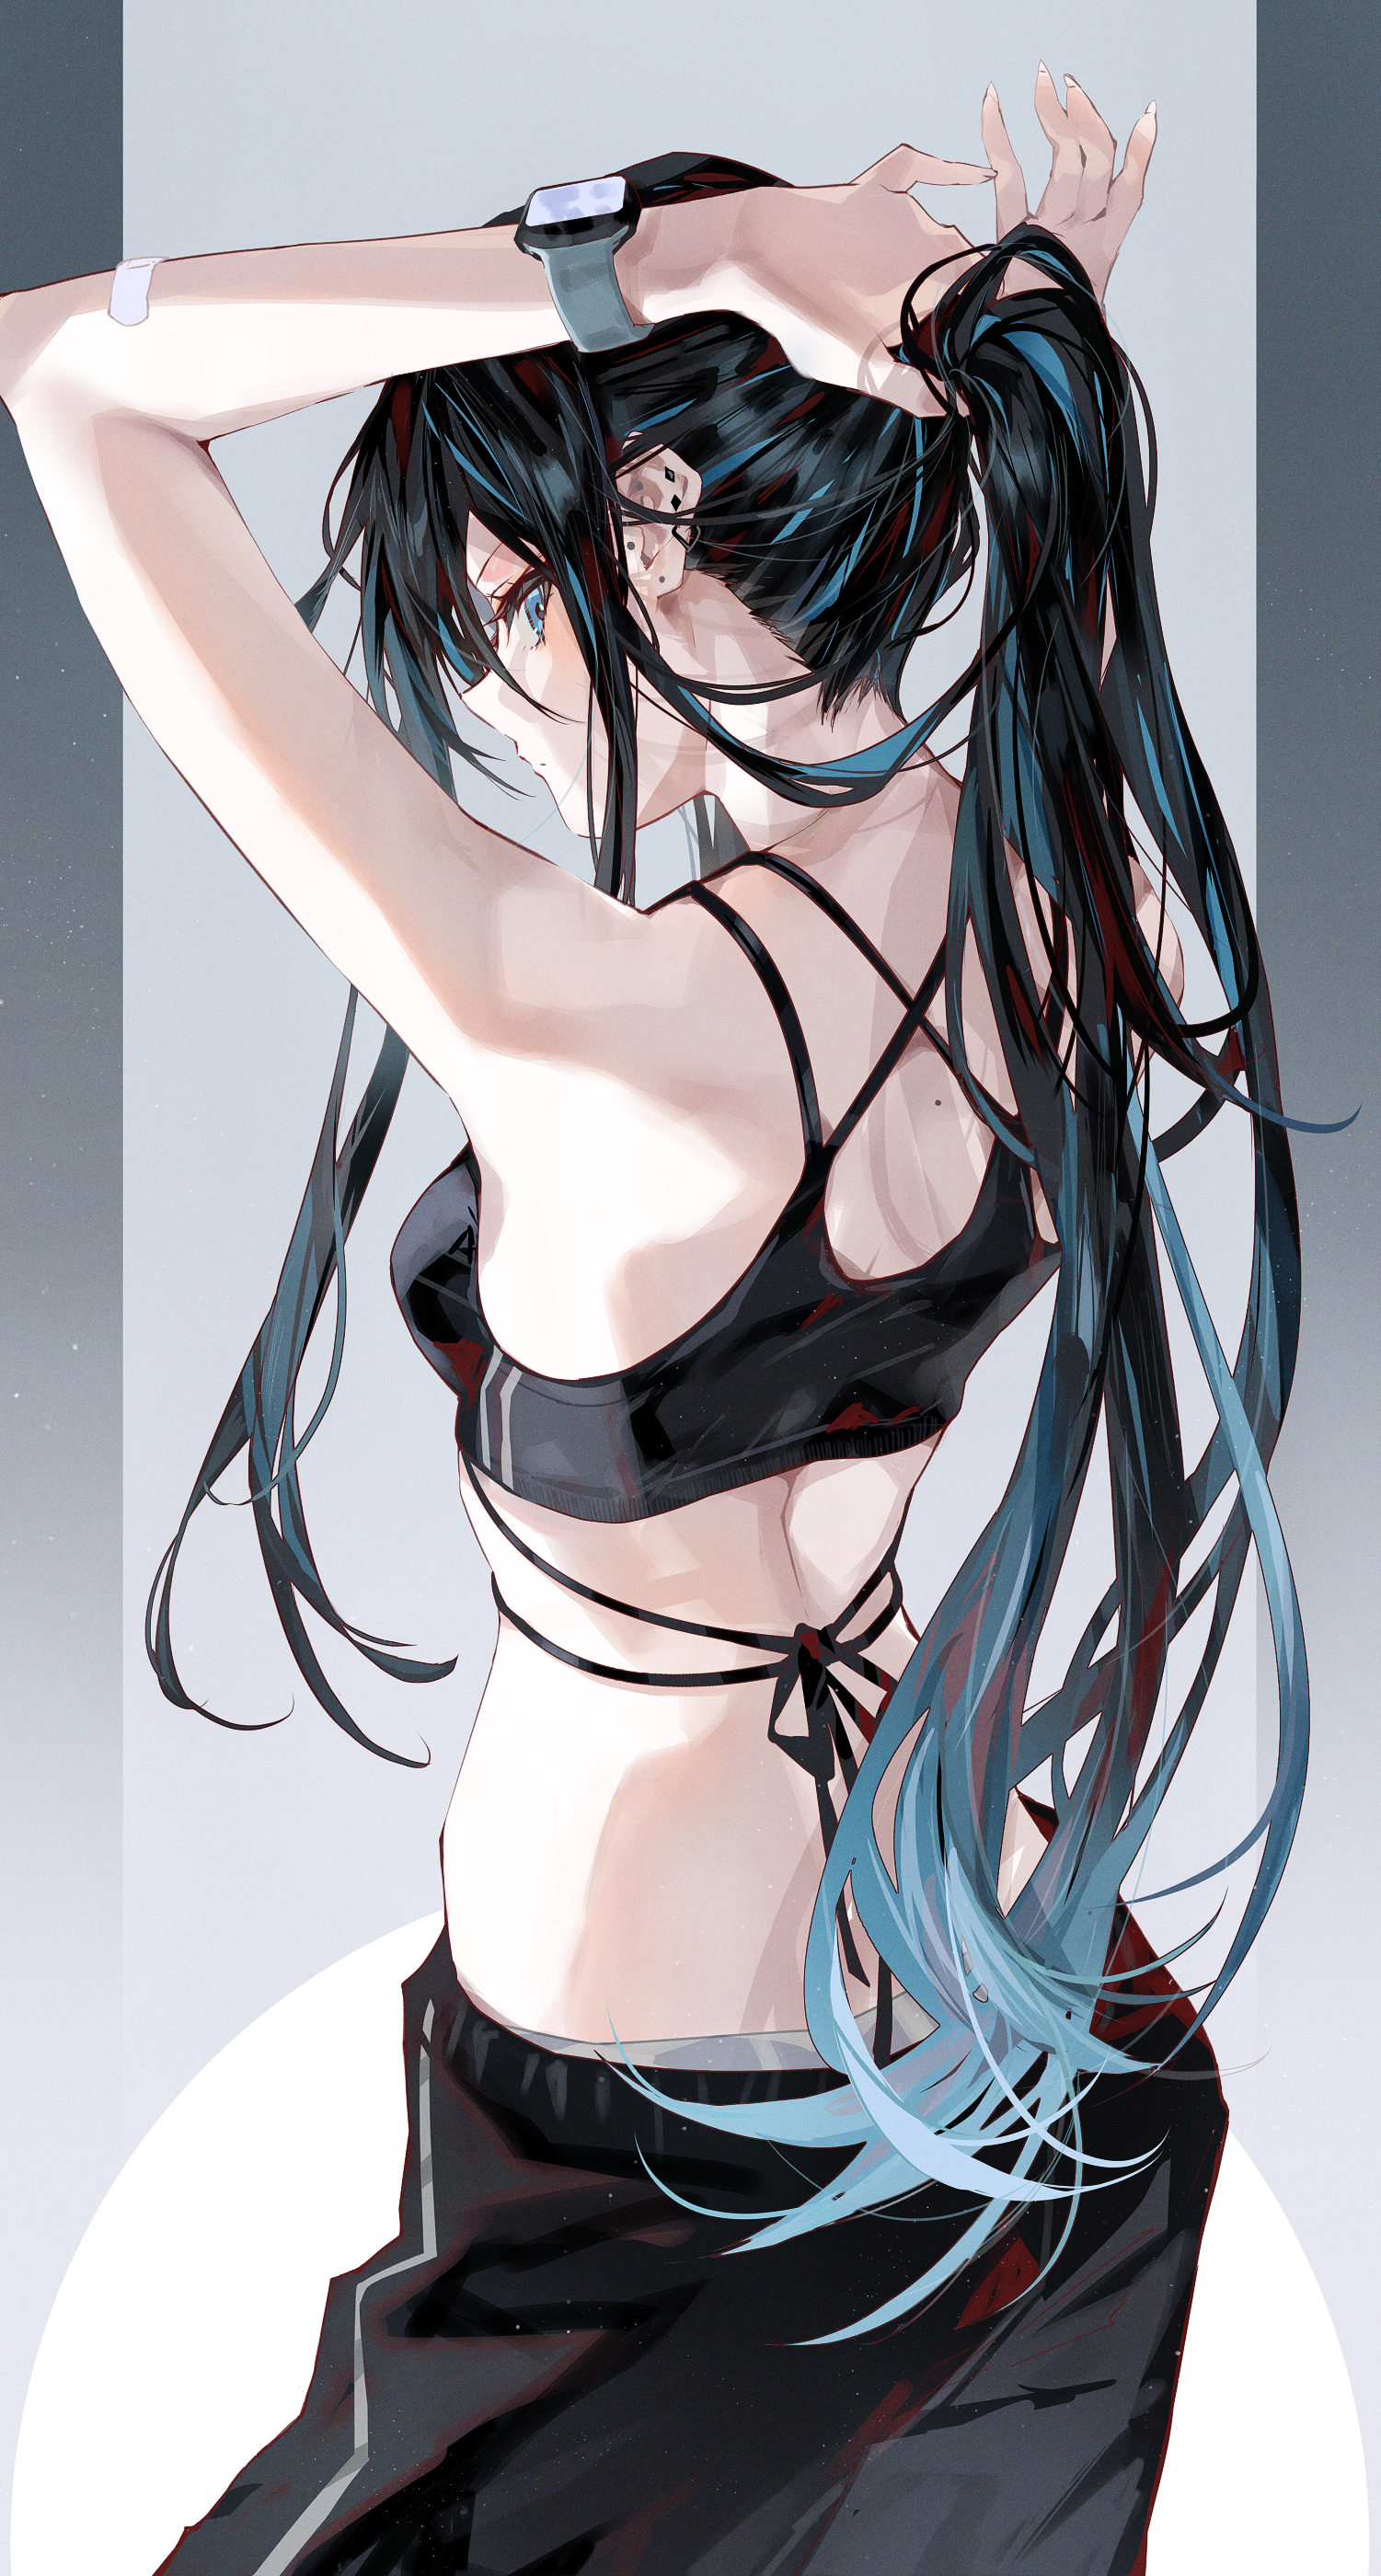 Wallpaper : anime girls, ponytail, dark hair, profile, lifting